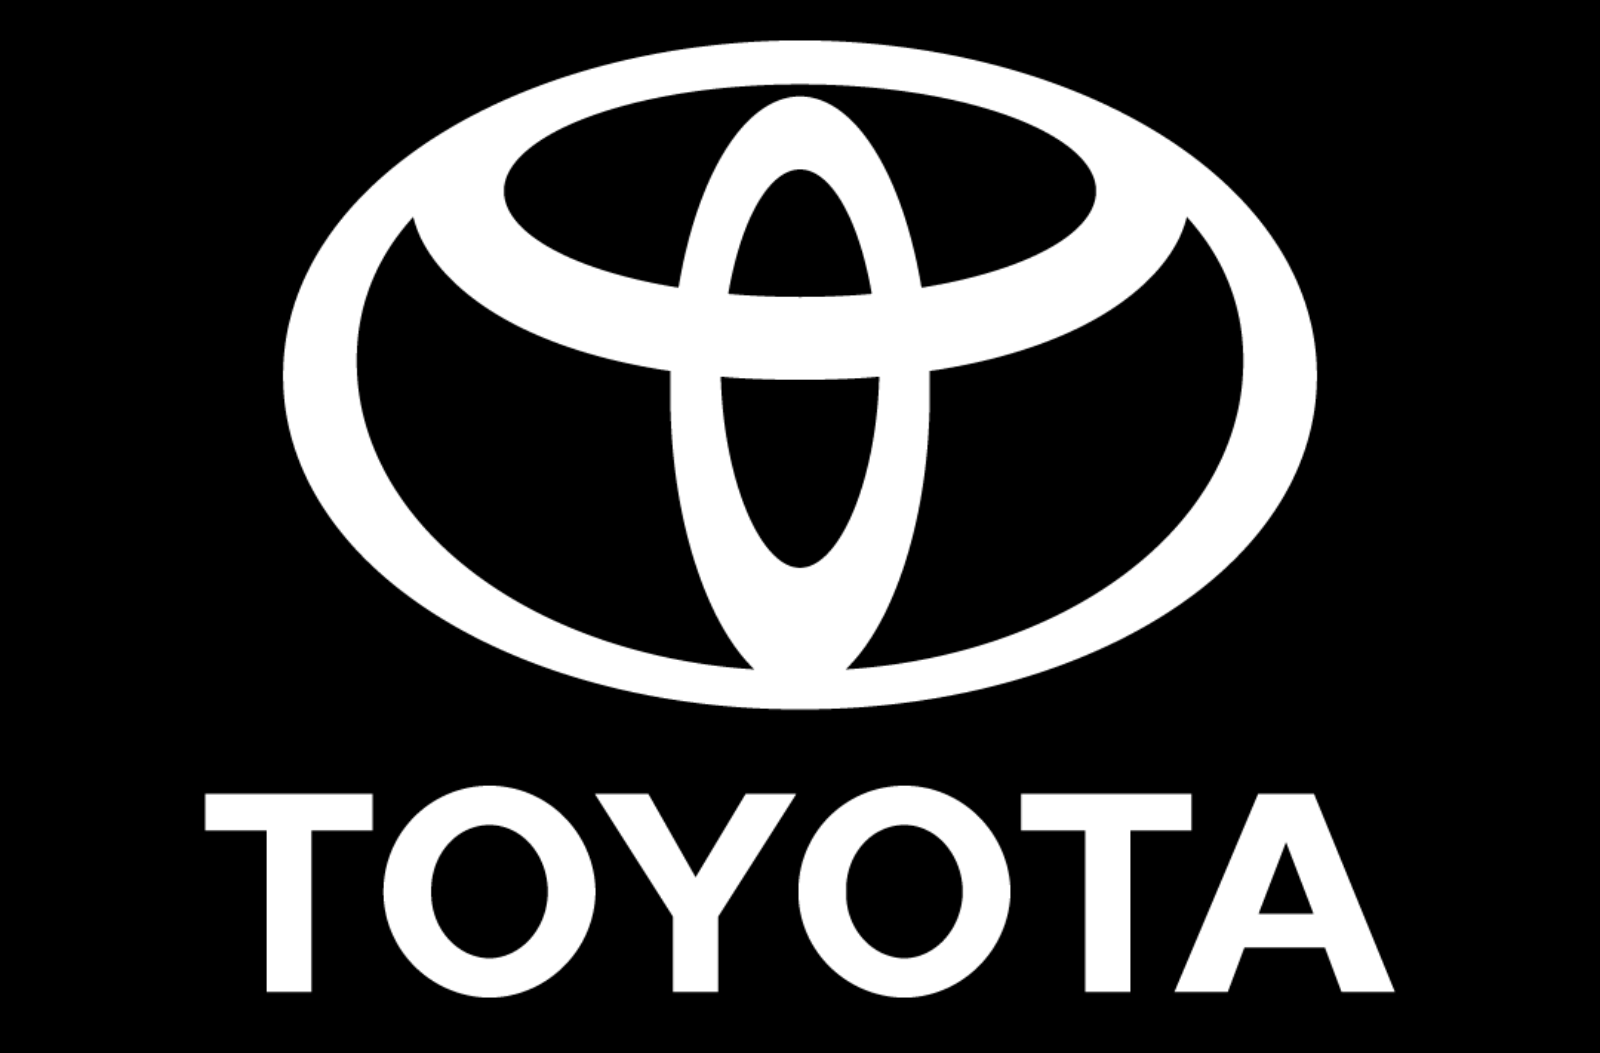 Toyota annuncia un'IMPORTANTE partnership con Huawei per la produzione automobilistica